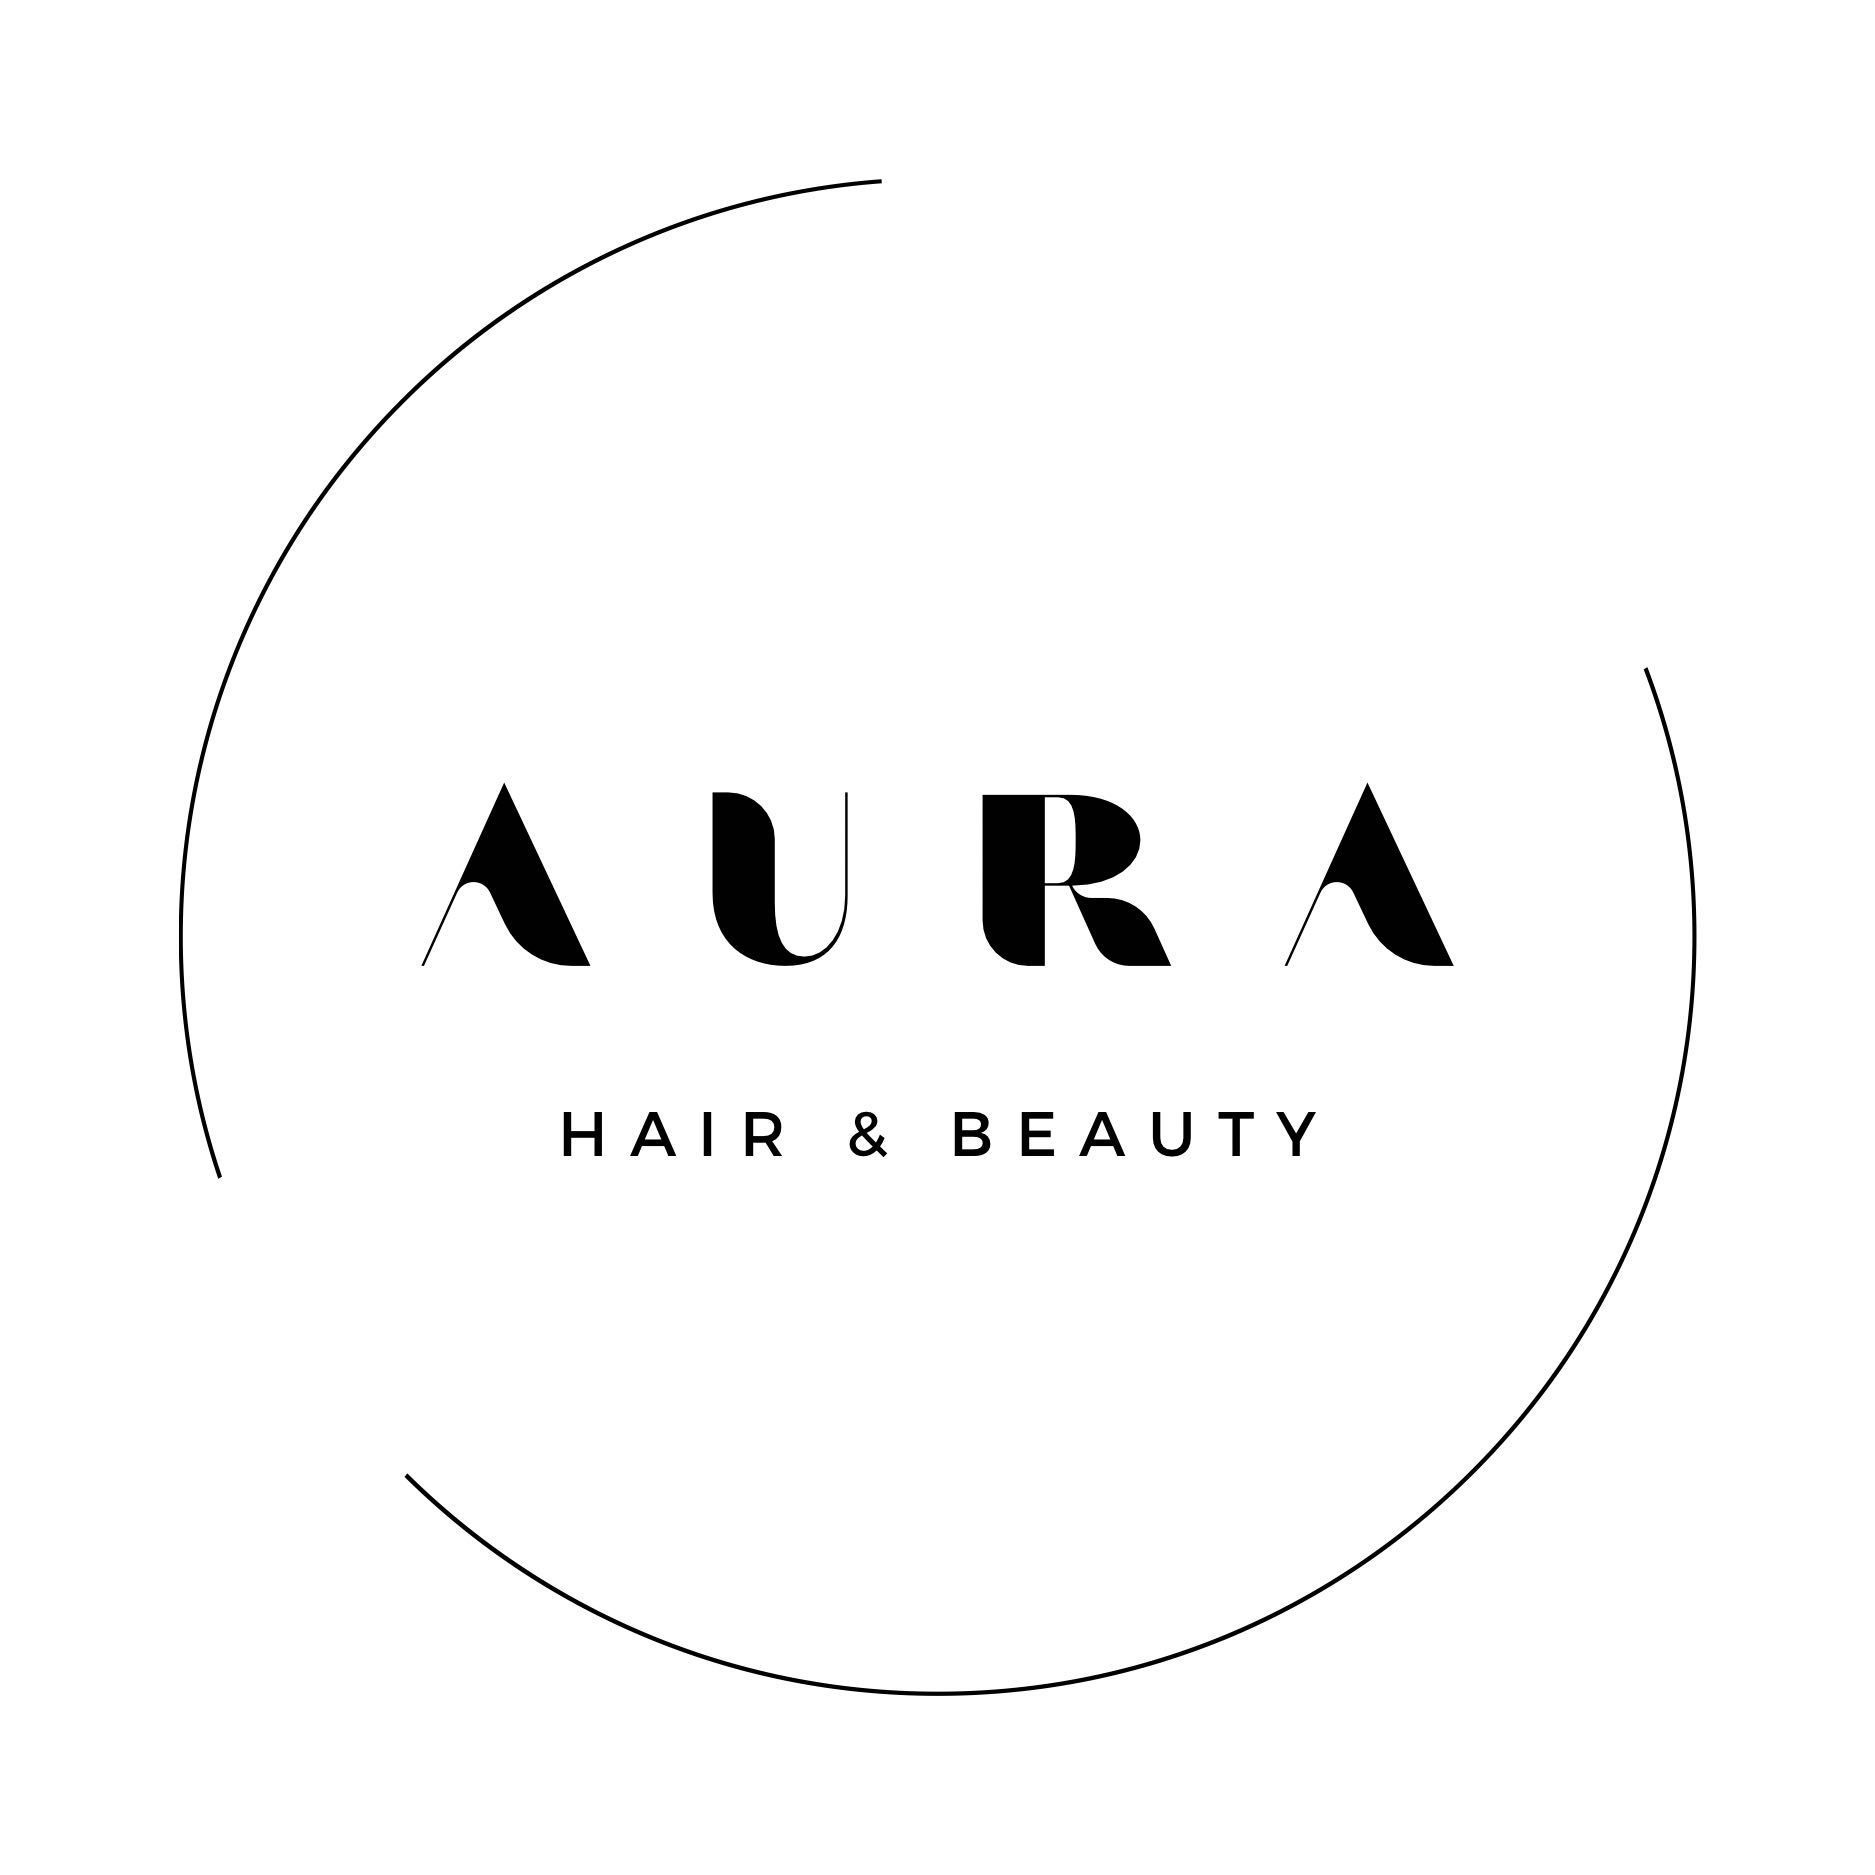 AURA hair & beauty, Jasna 14A/59, 44-122, Gliwice